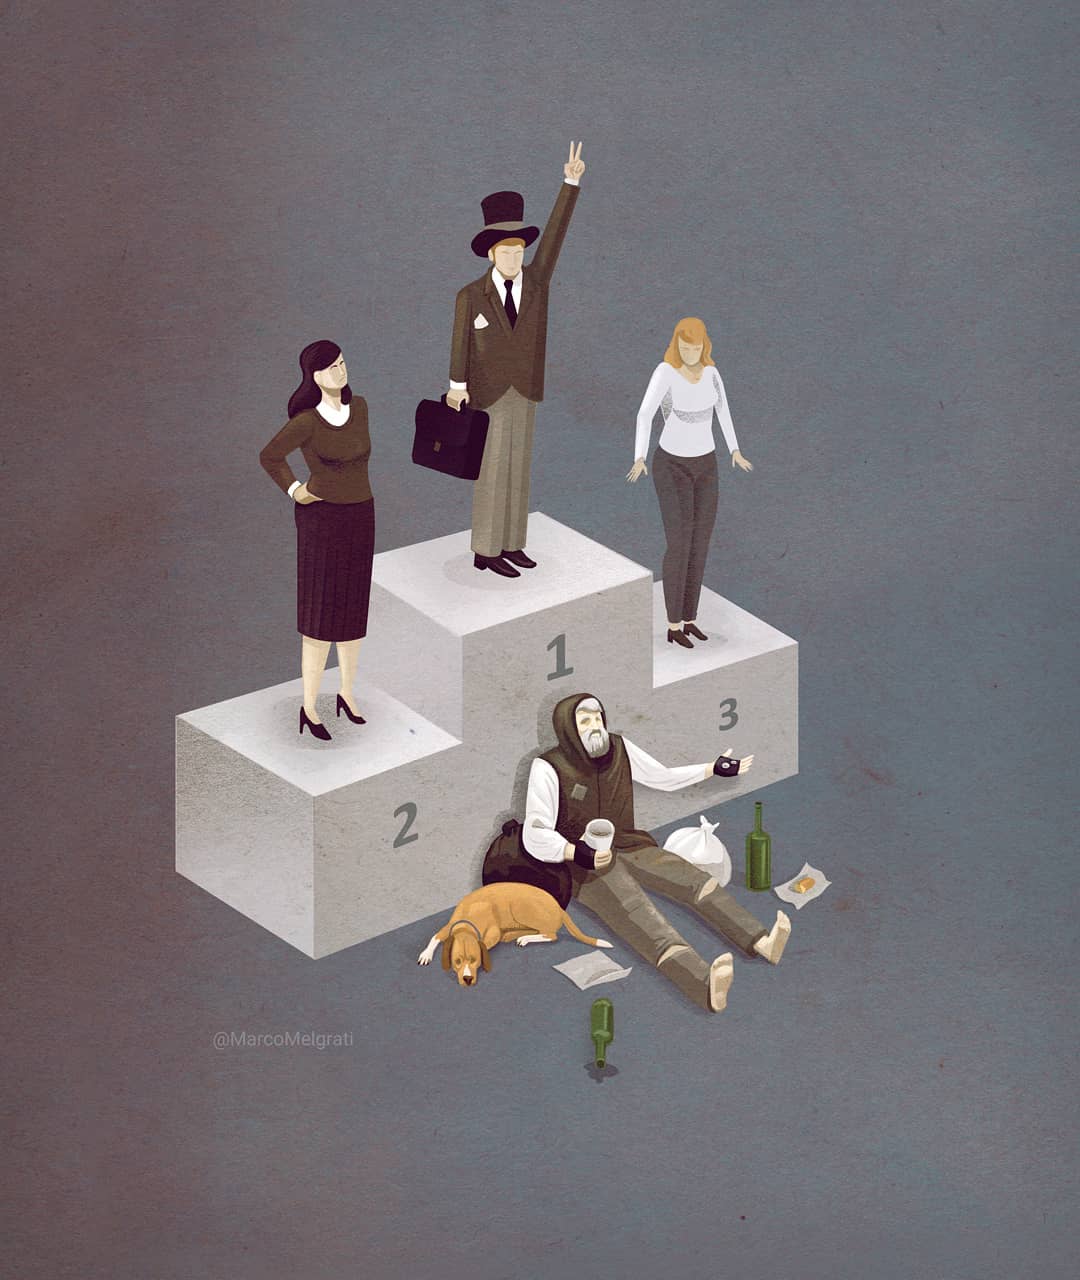 25 острых сатирических иллюстраций, которые невероятно точно бьют по проблемам современного общества 73